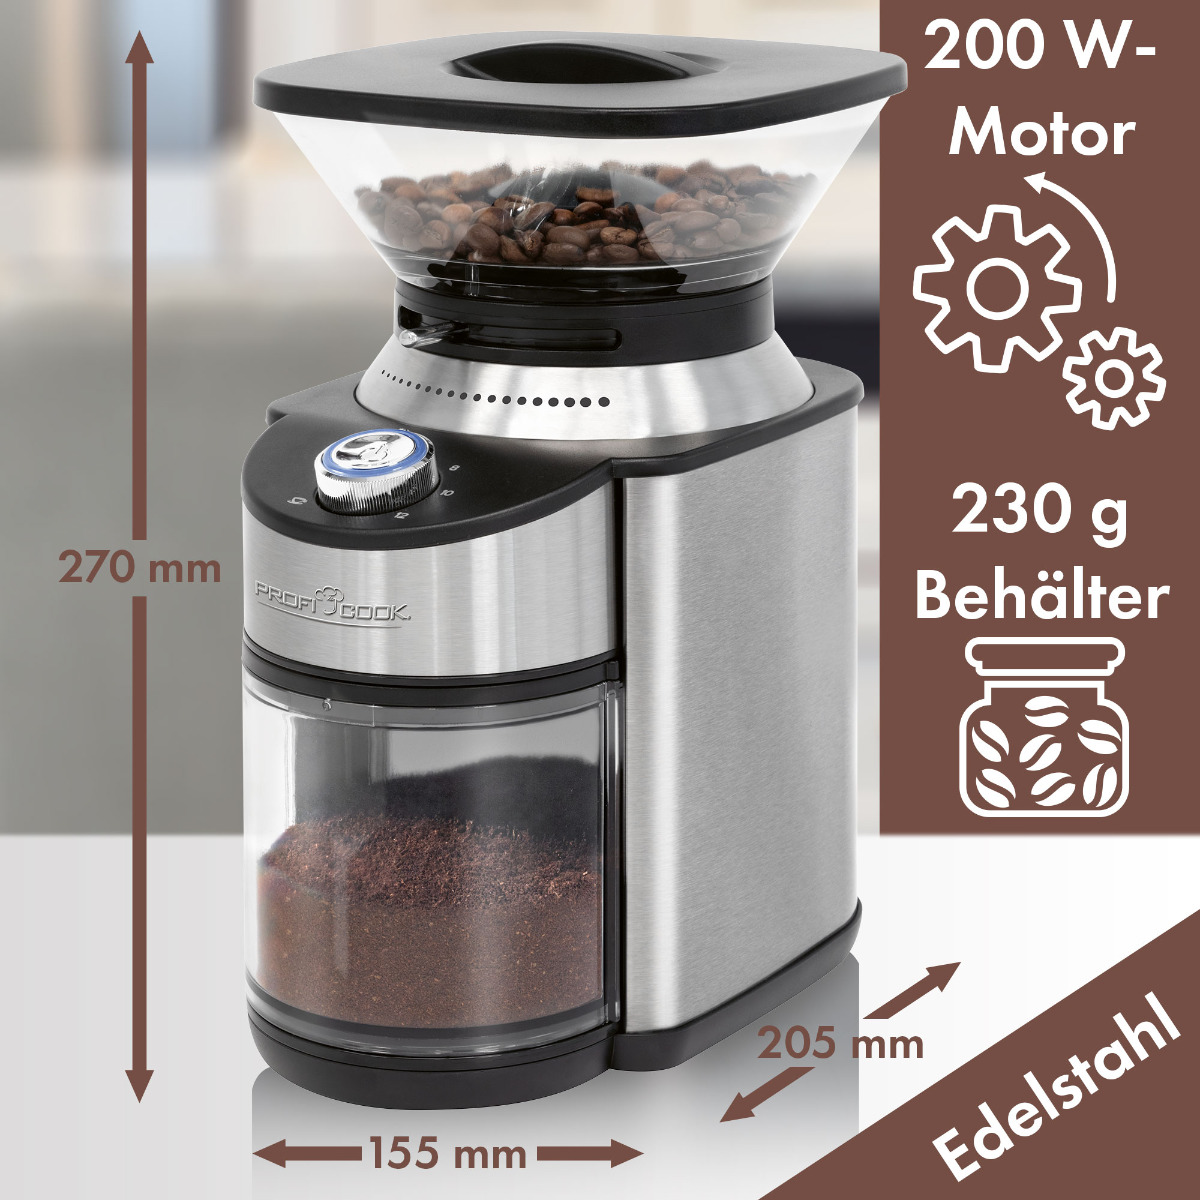 PC-EKM (200 Watt, Edelstahl-Kegelmahlwerk) 1205 Kaffeemühle Silber PROFICOOK